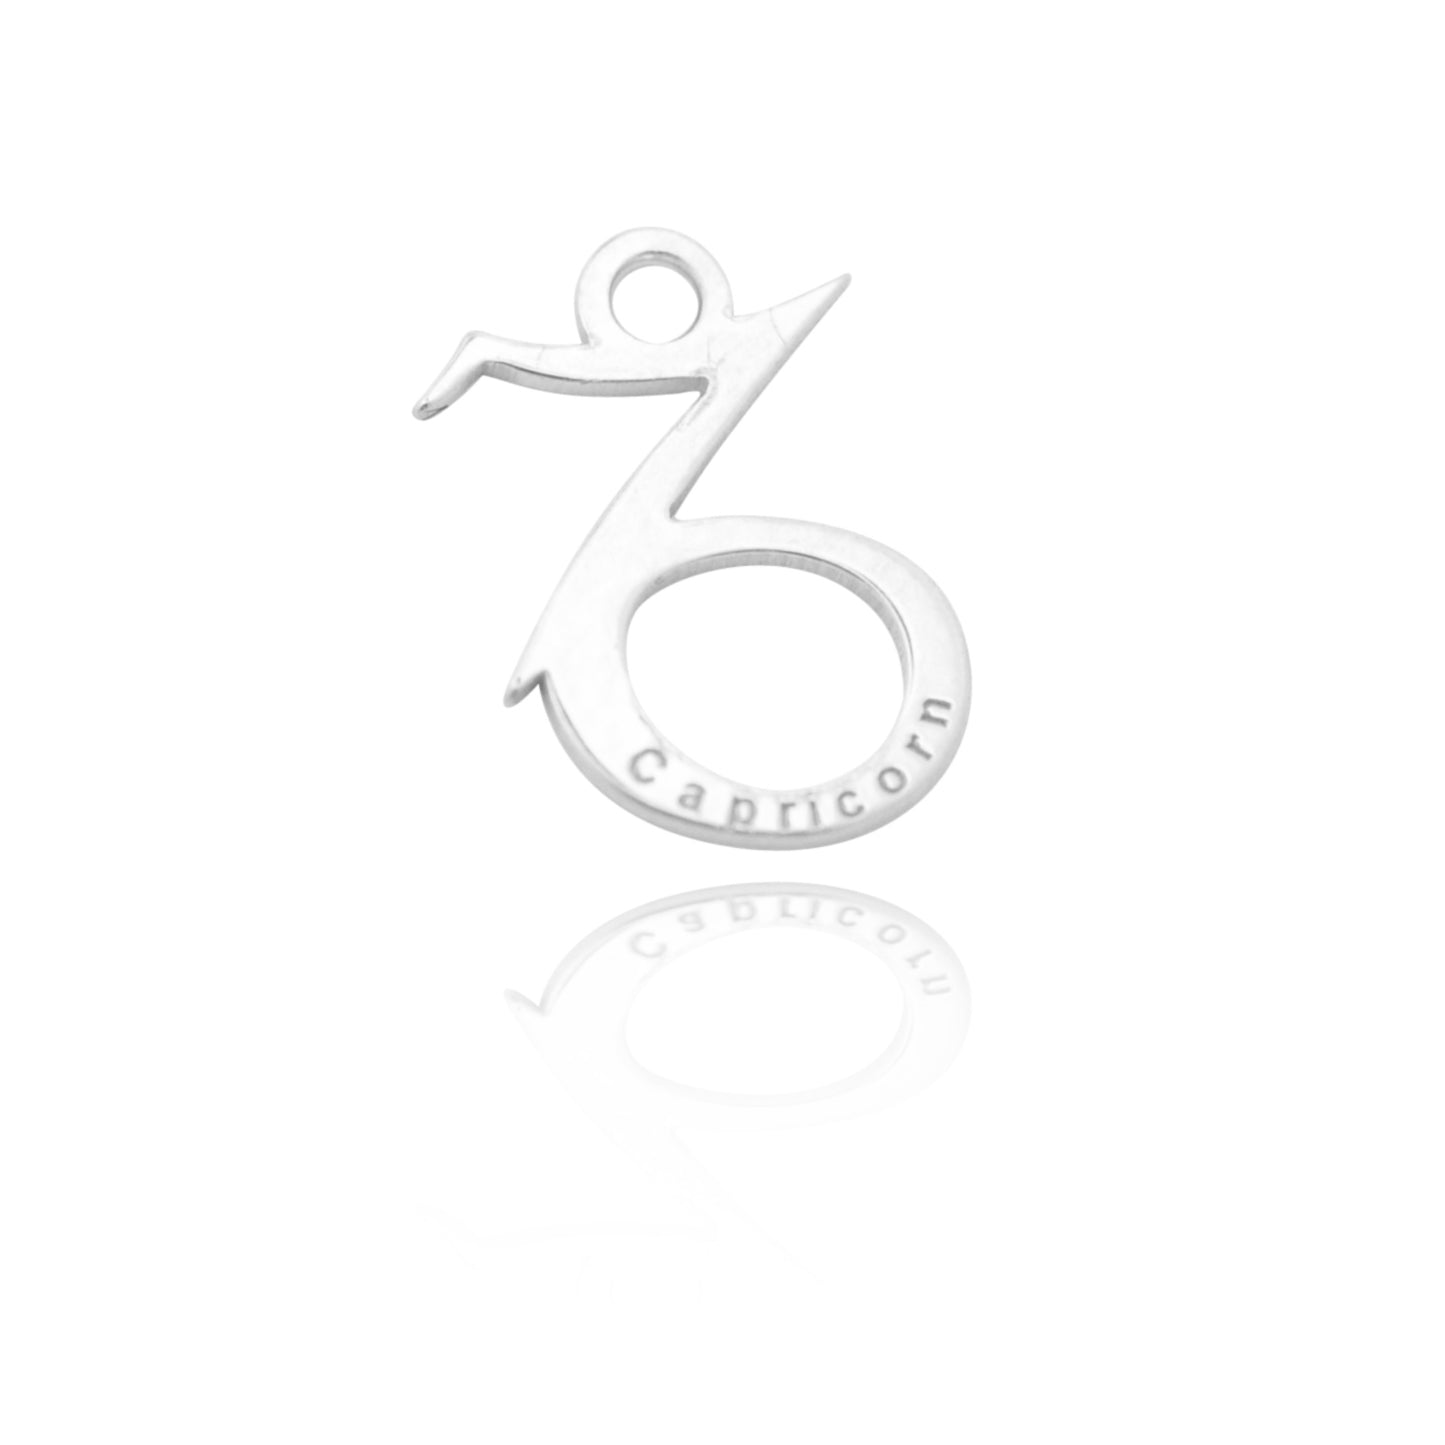 Zodiac pendant "Capricorn" // 925 silver // 11mm